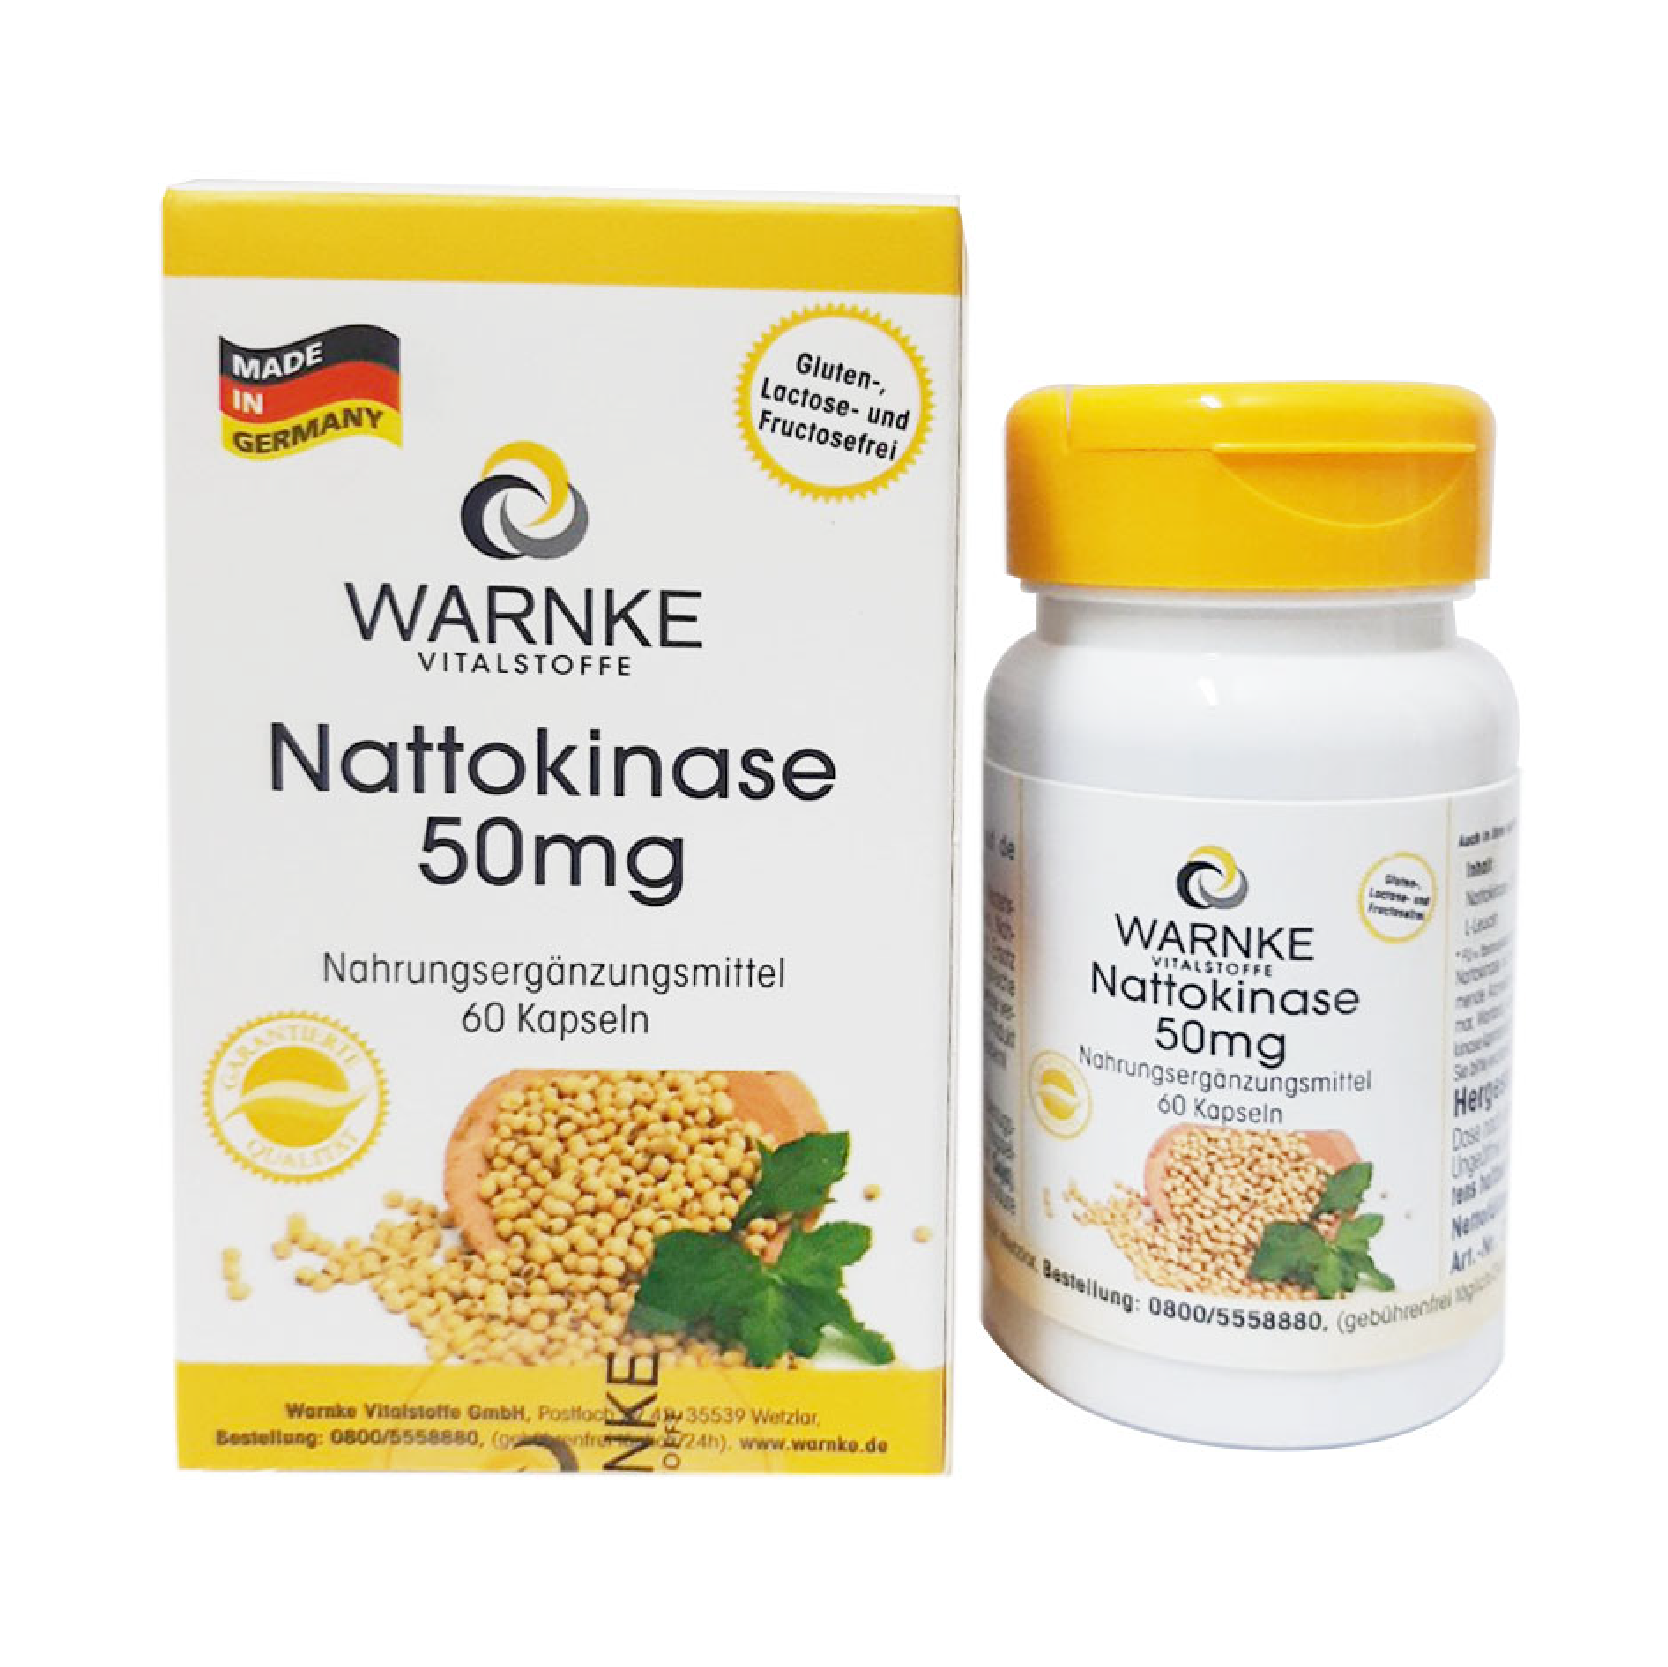 Hình ảnh của Viên uống chống đột quỵ Nattokinase - Warnke